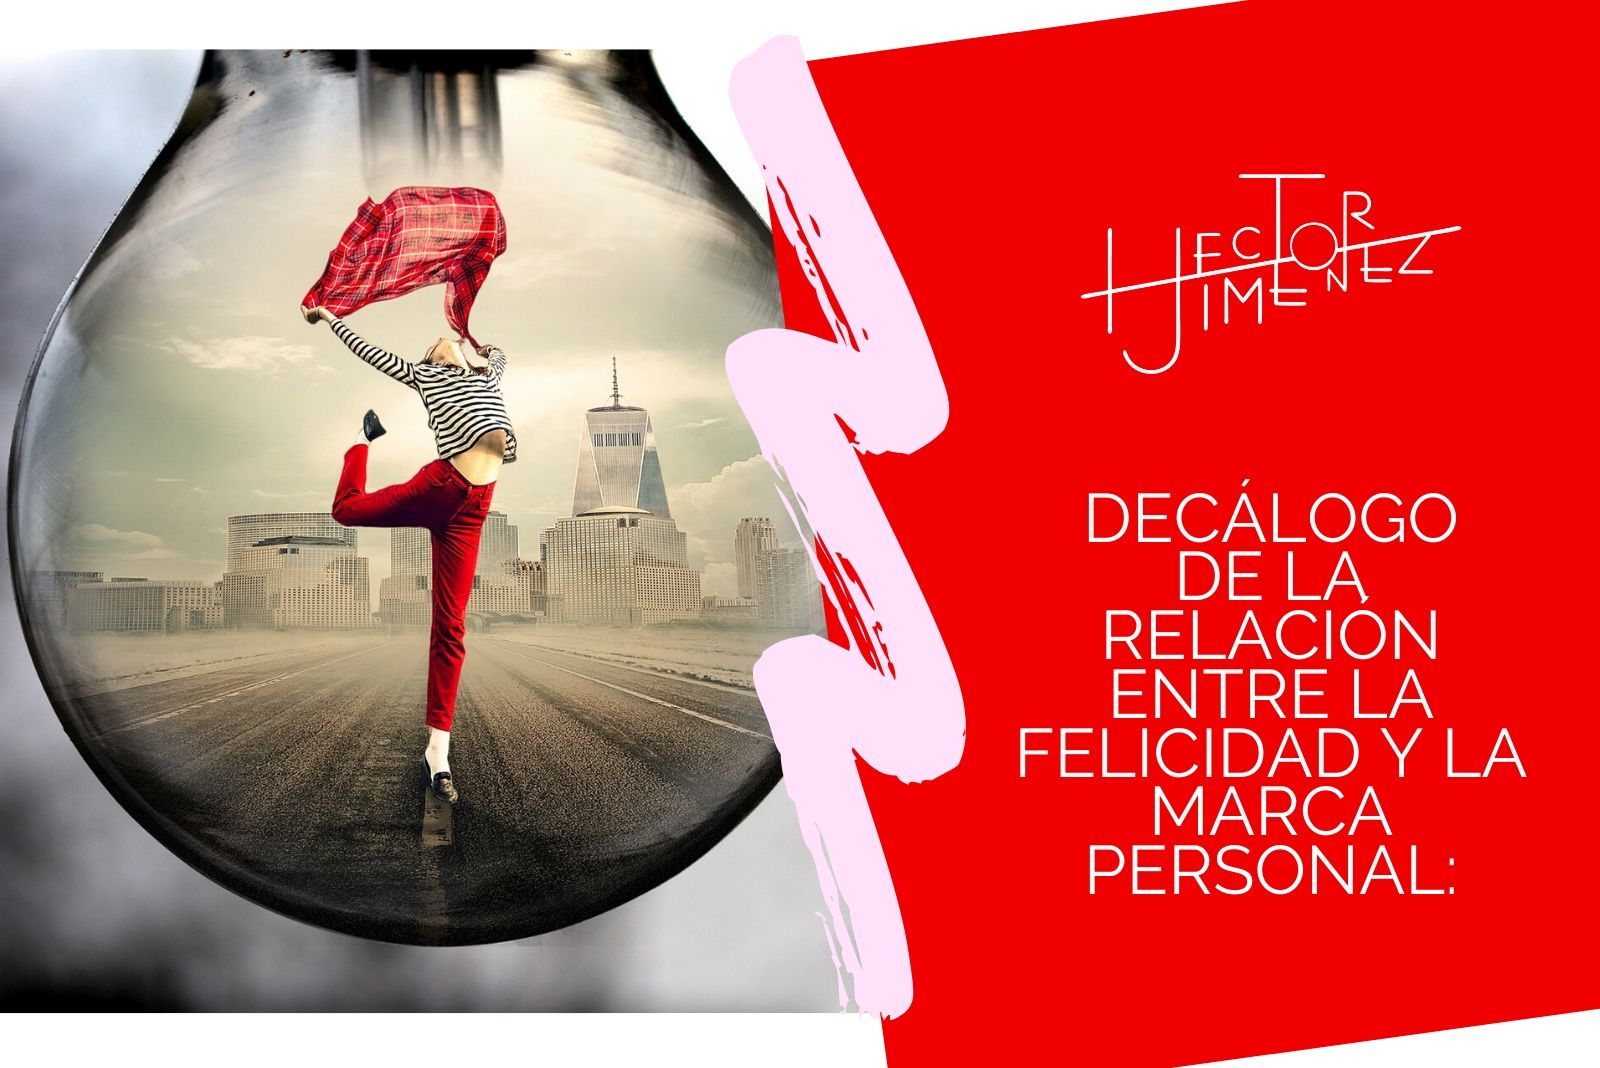 Hector-Jimenez-Decálogo-De-La-Relación-Entre-la-Felicidad-y-La-Marca-Personal-1-1